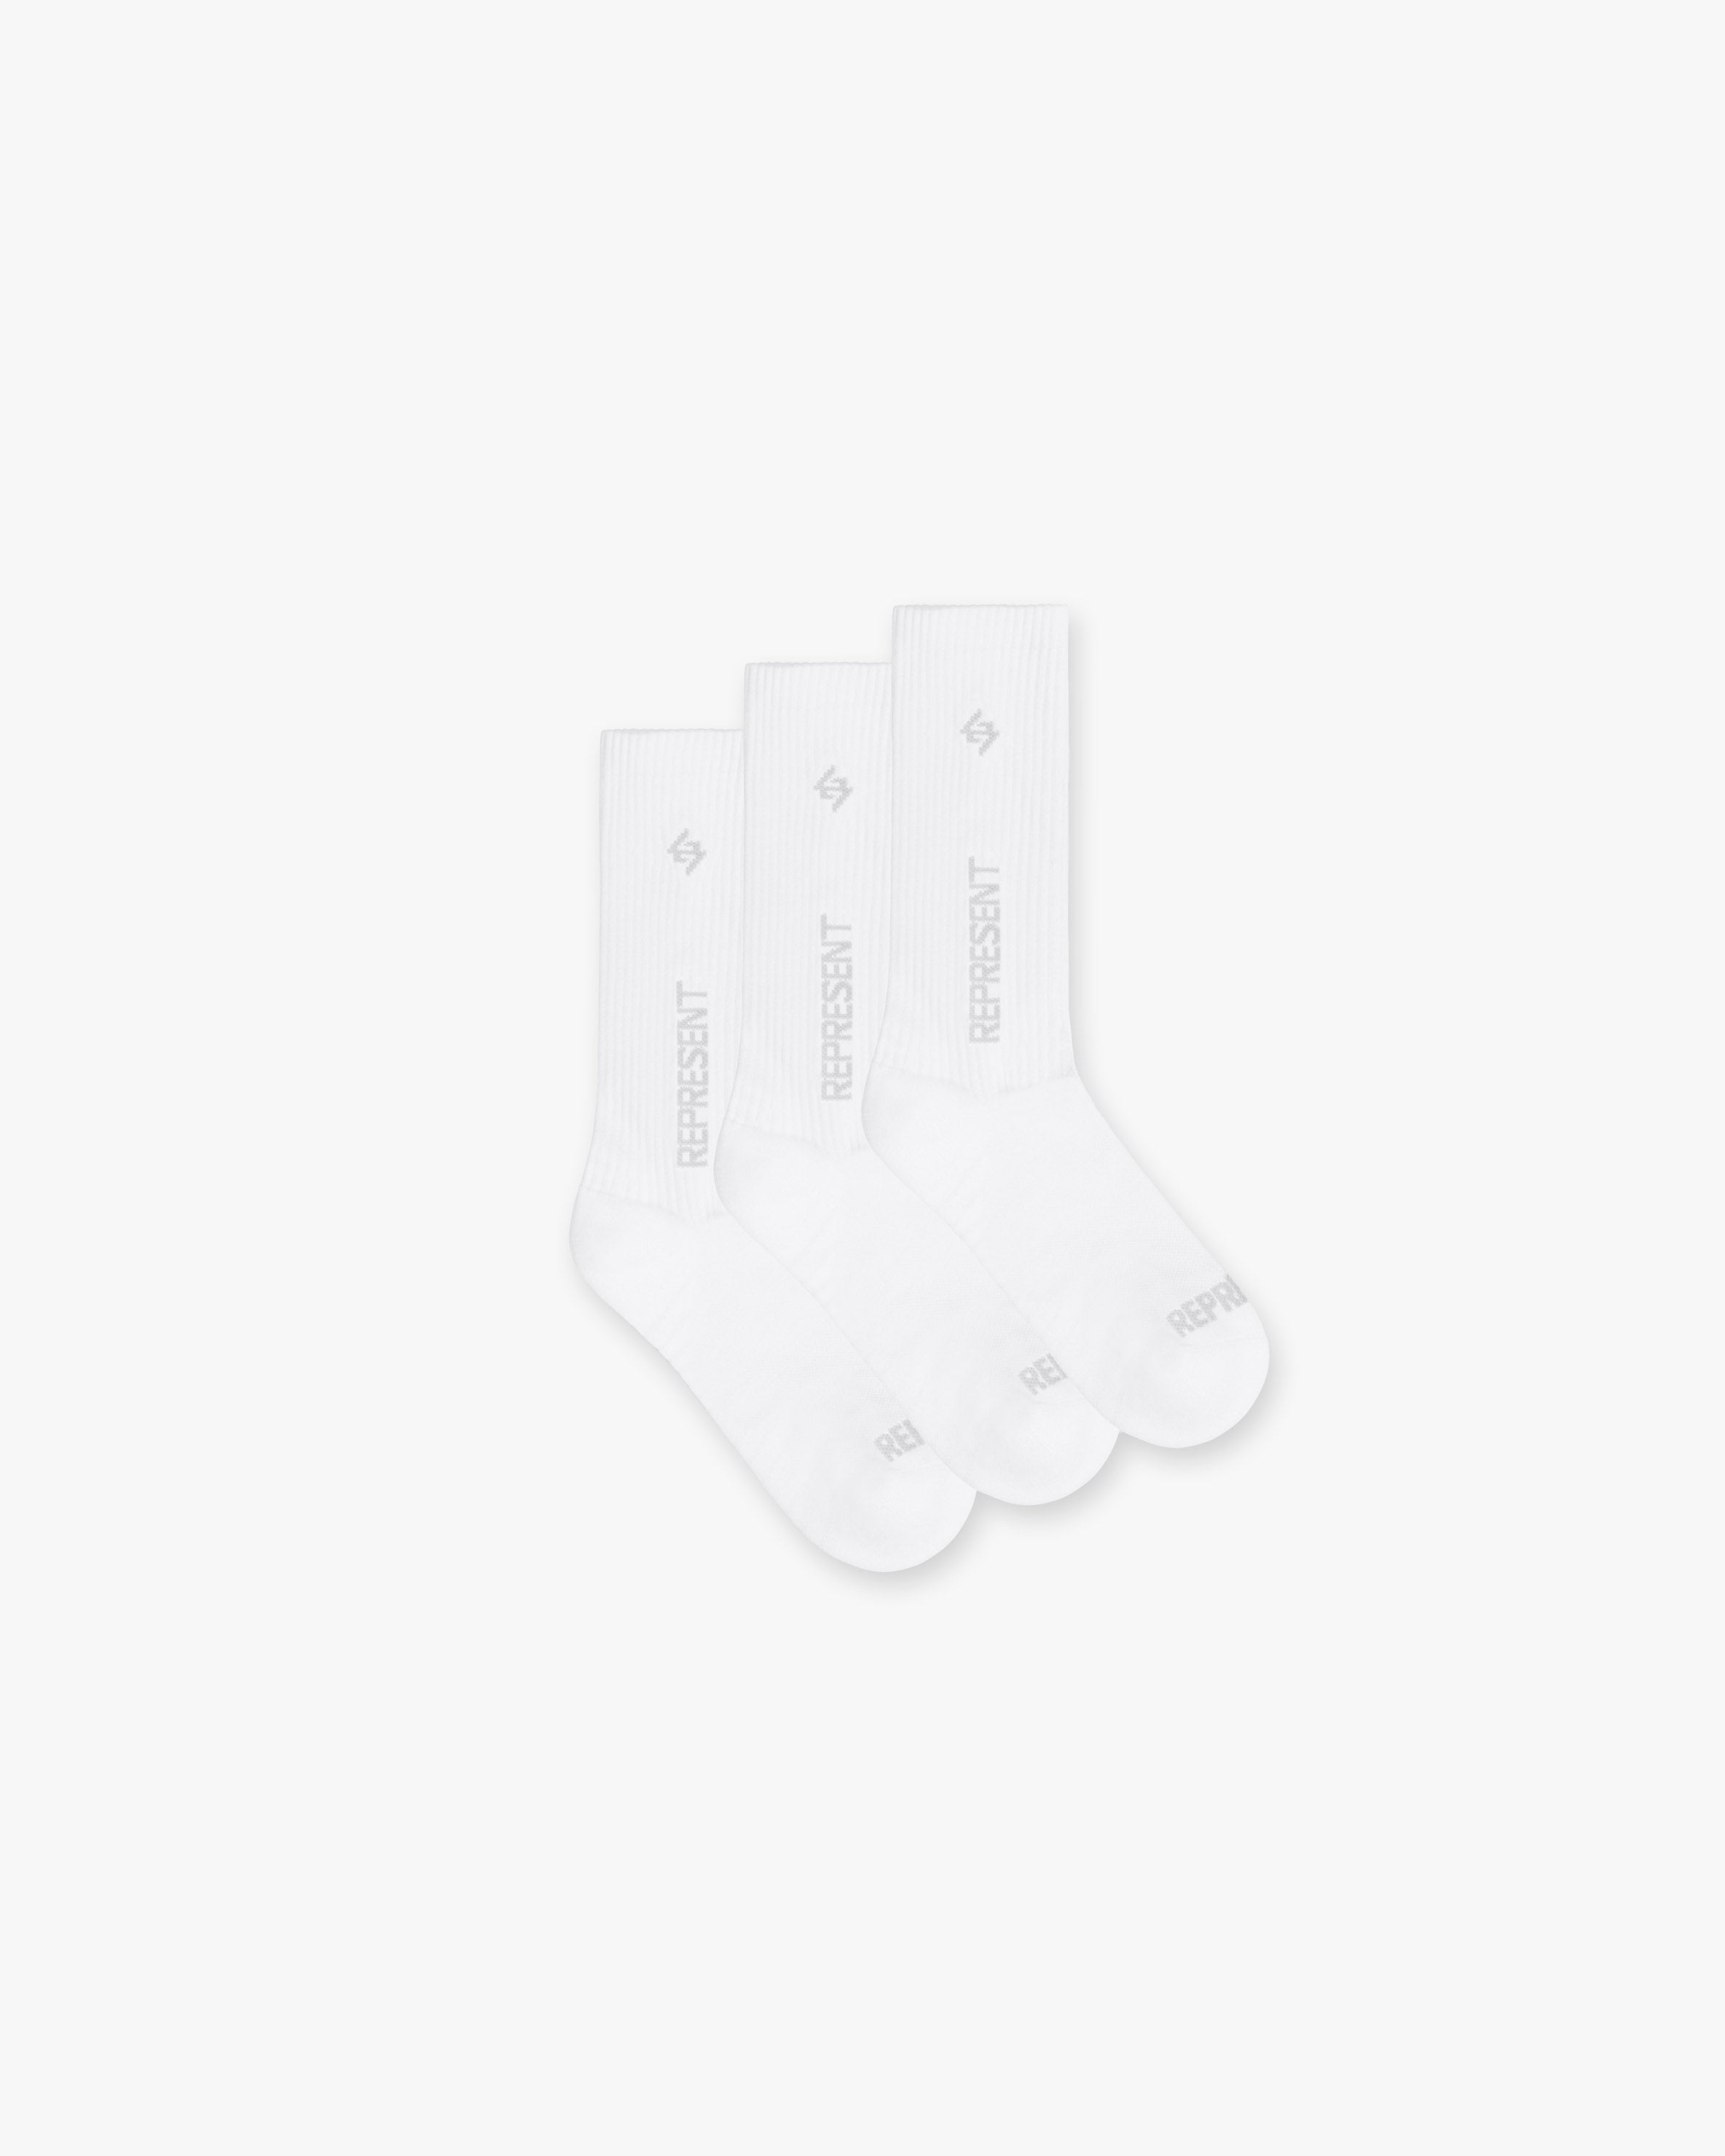 Team 247 Socks - 3 Pack - White Grey